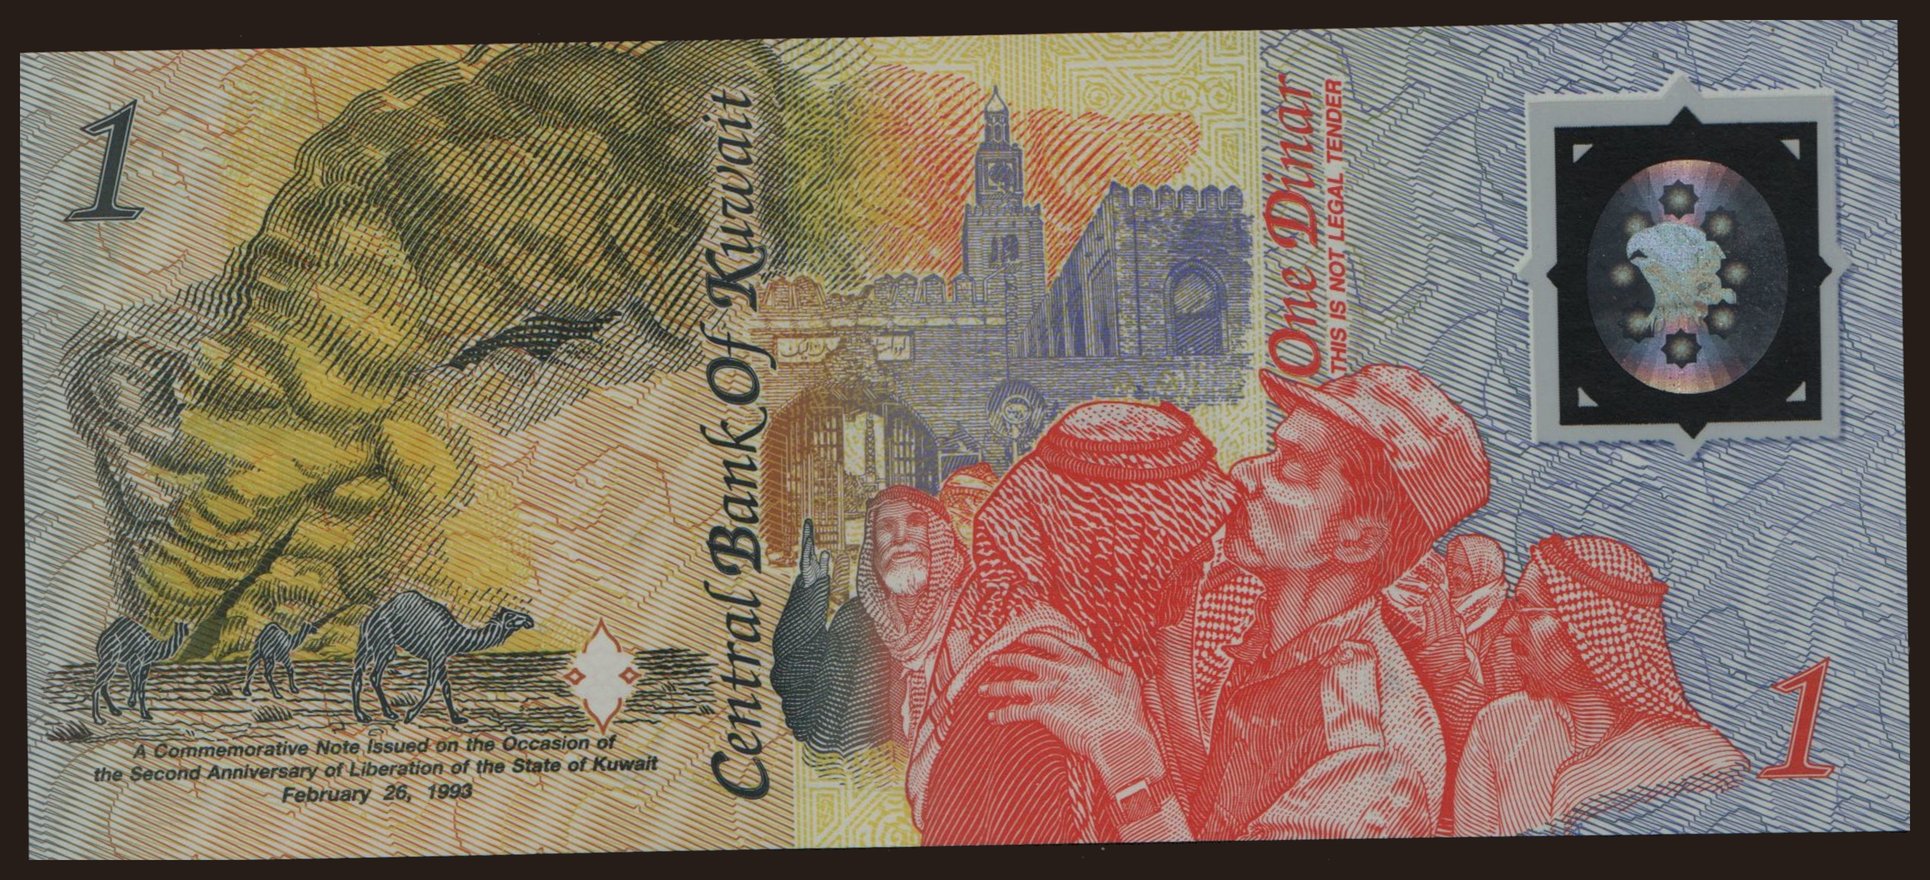 1 dinar, 1993